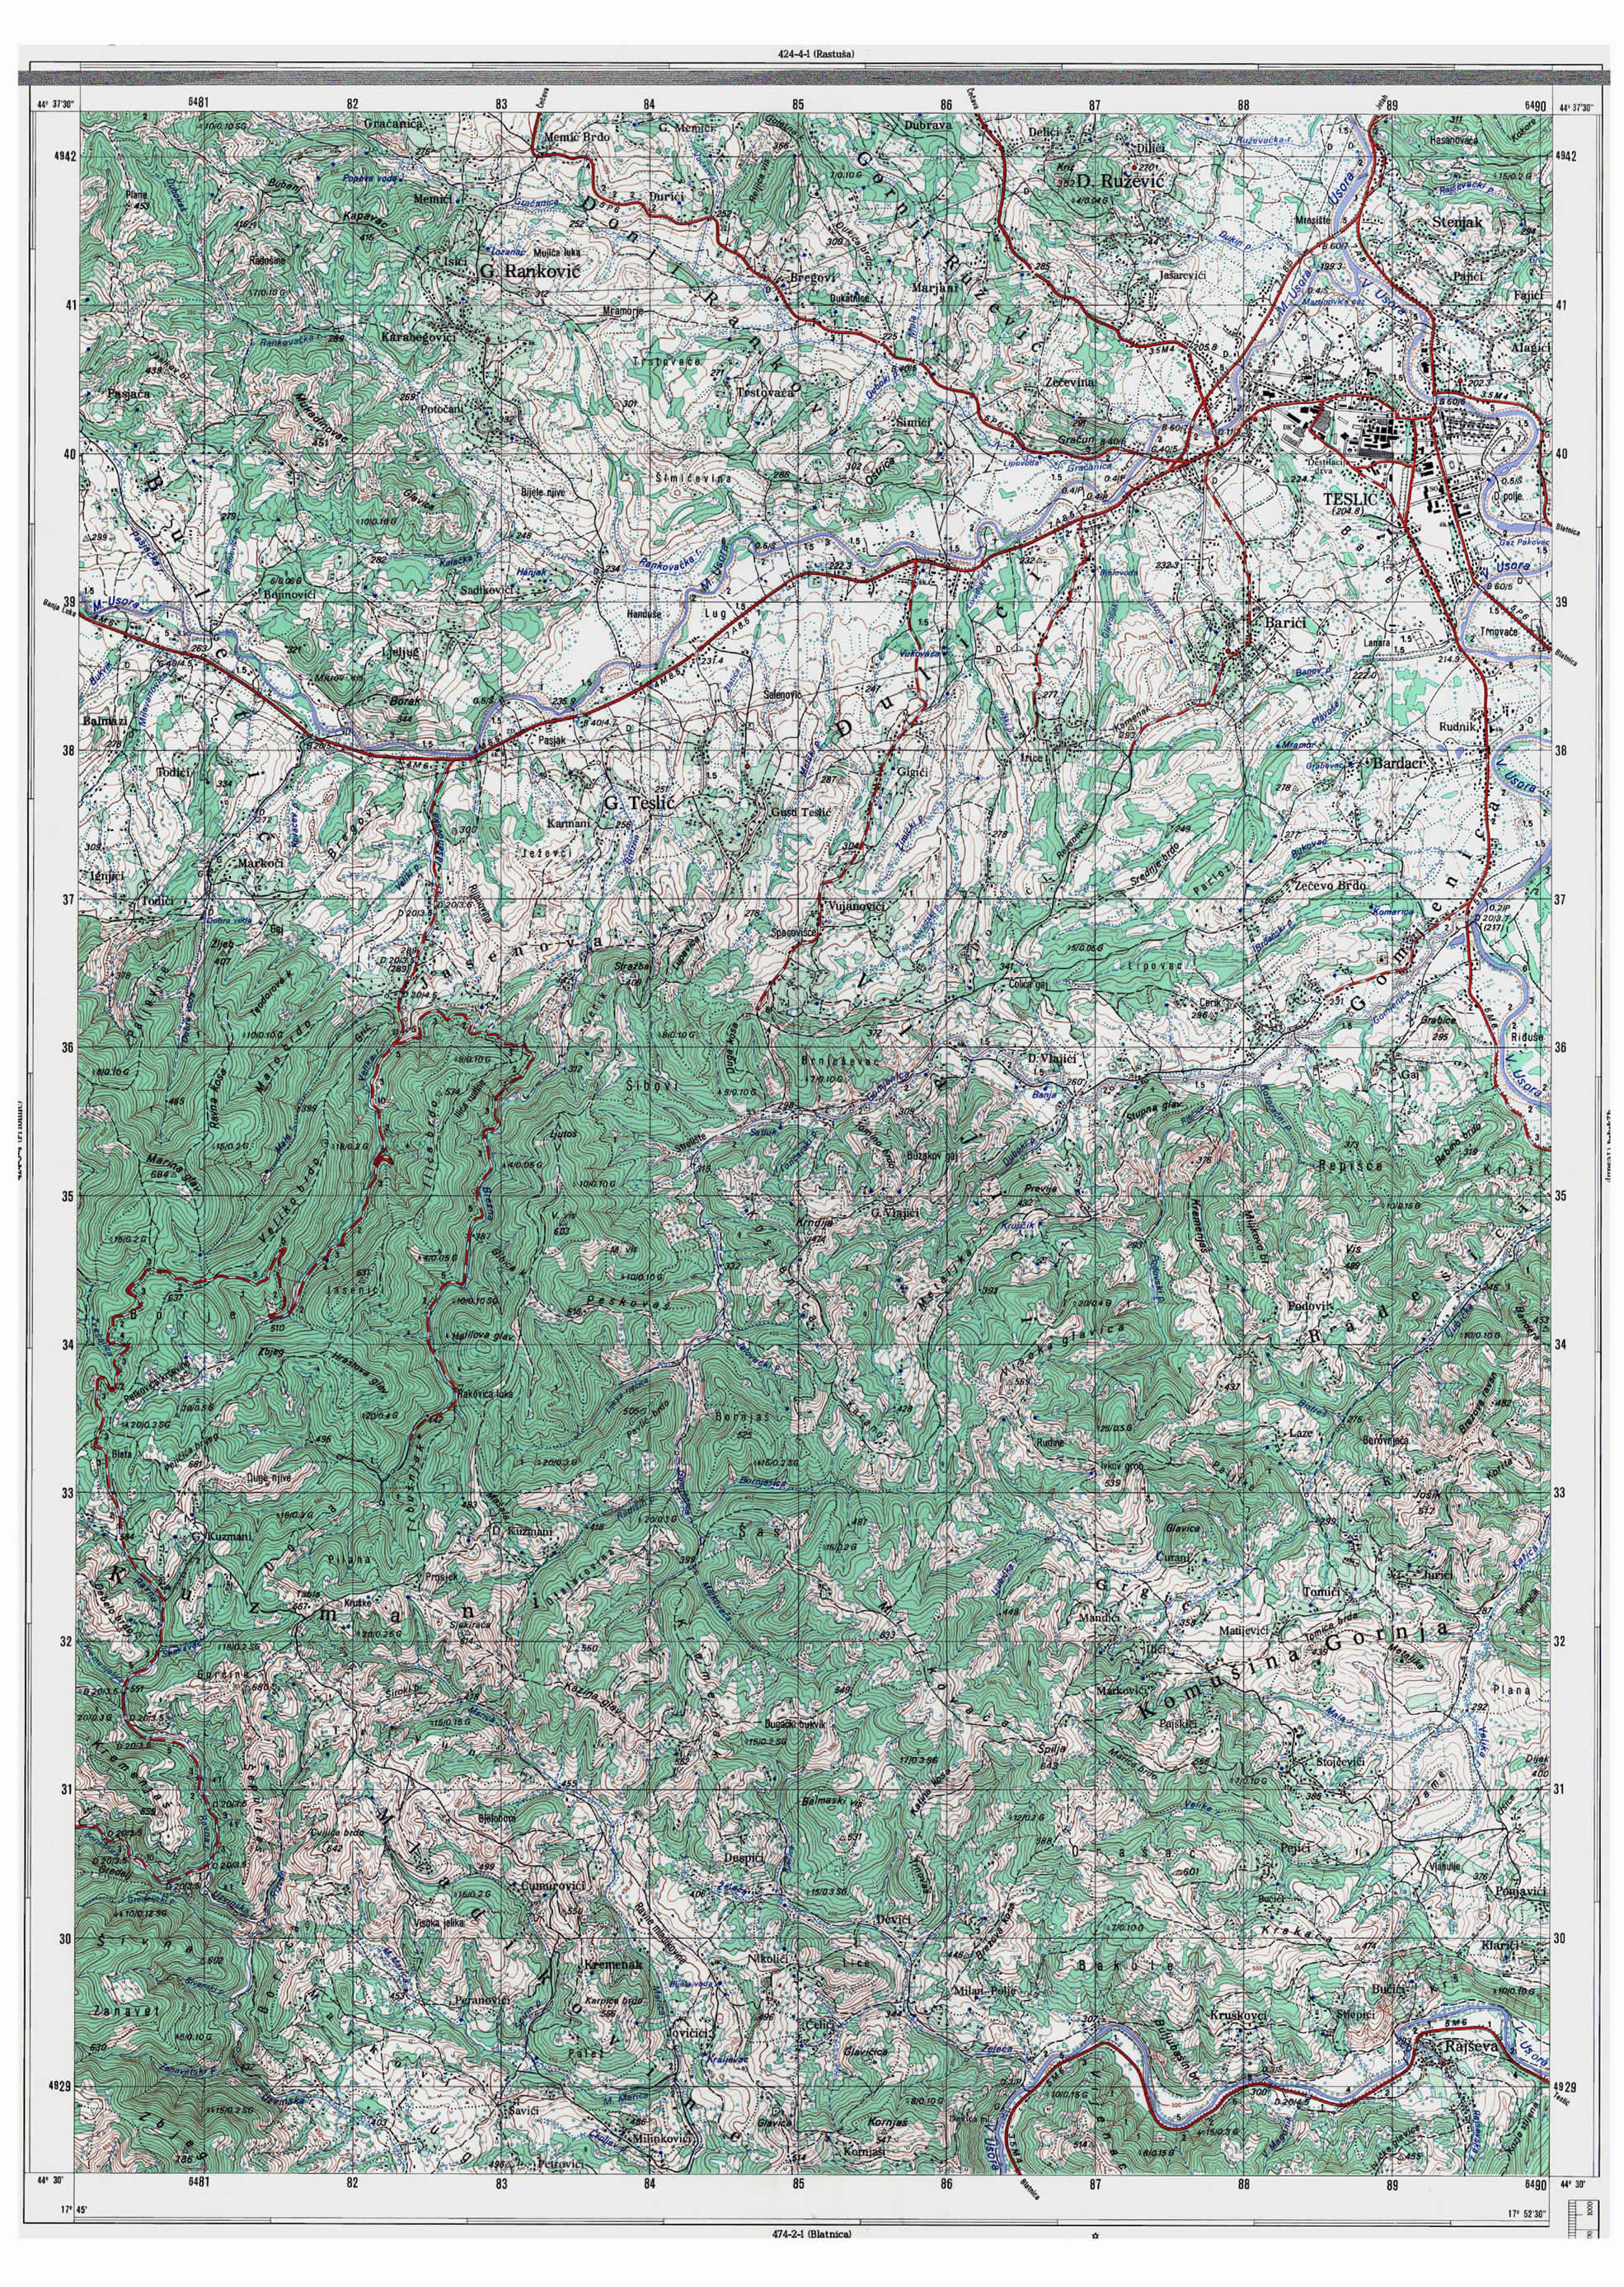  topografska karta BiH 25000 JNA  teslic